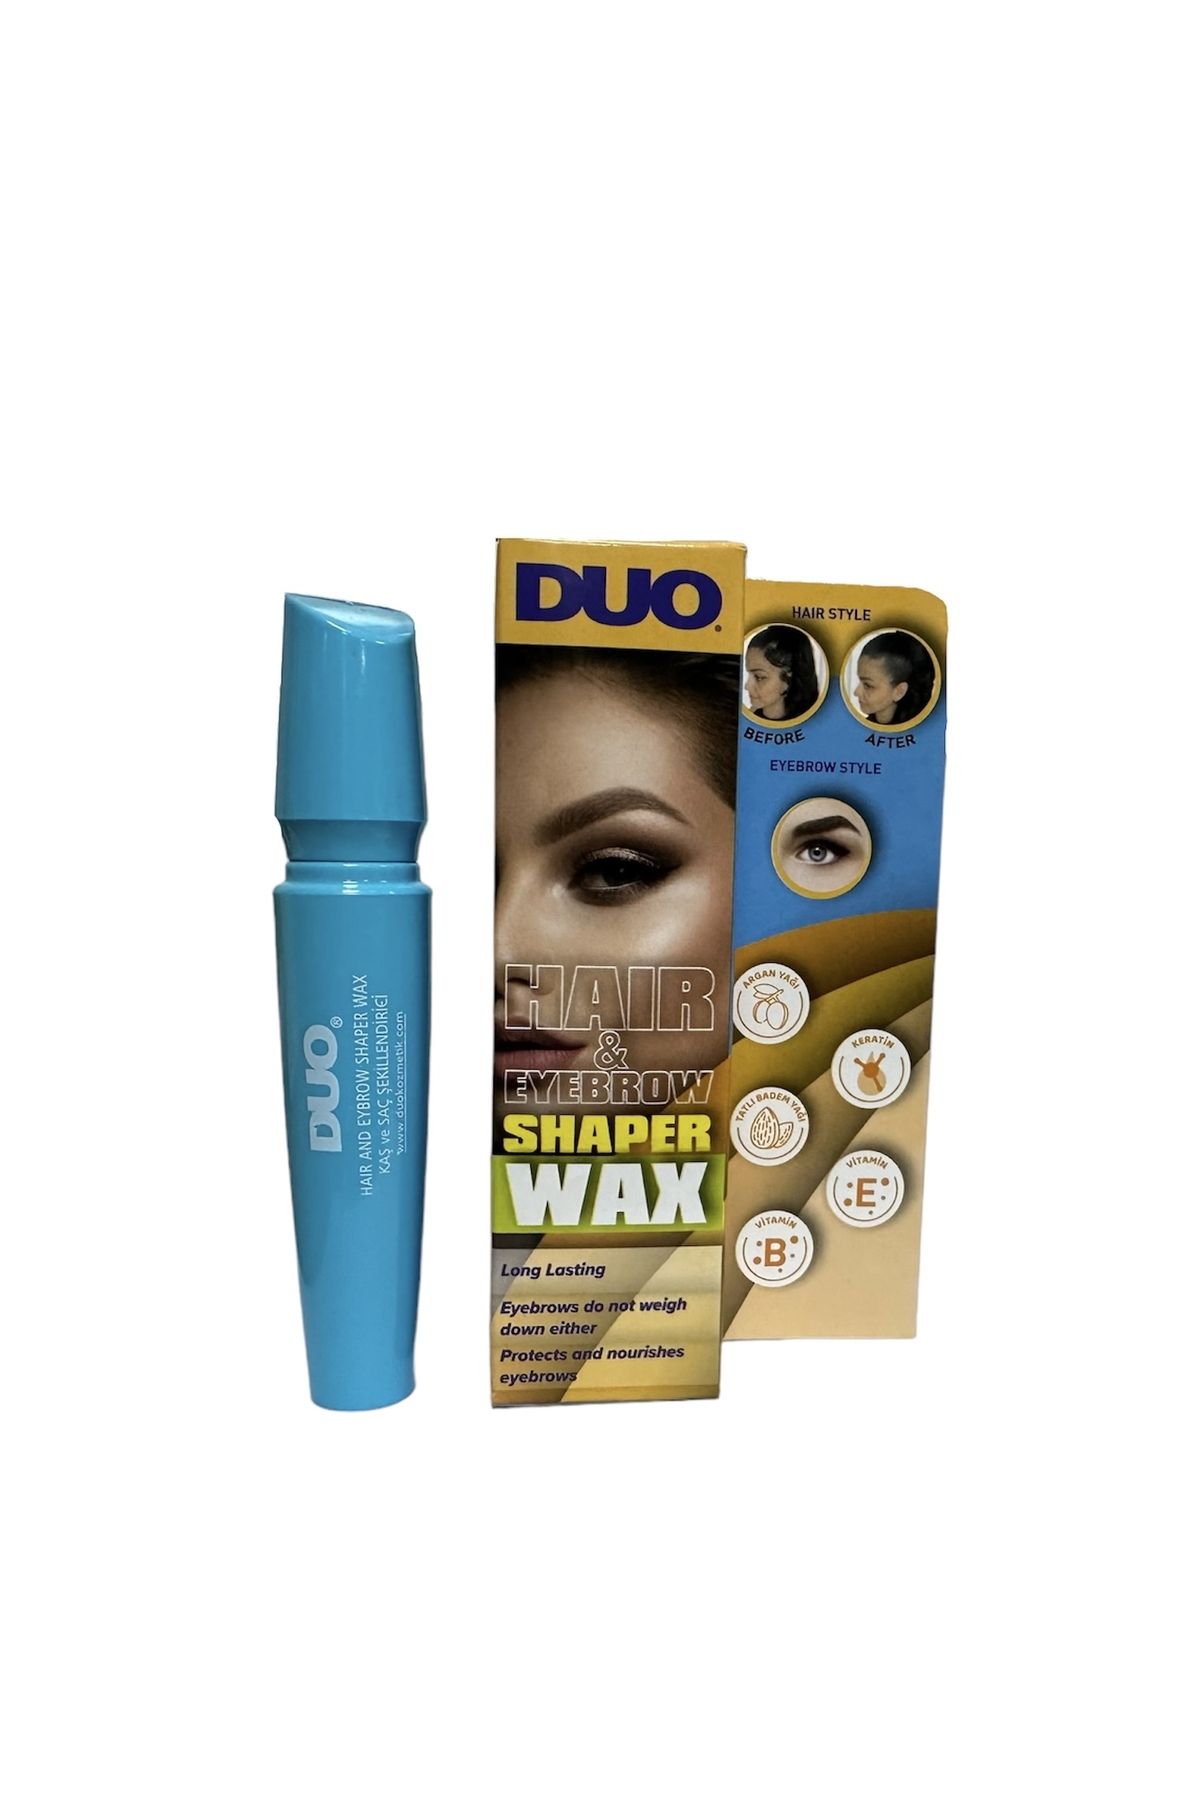 Duo haır & eyebrow SHAPER wax Kaş ve bebek saçı sabitleyici